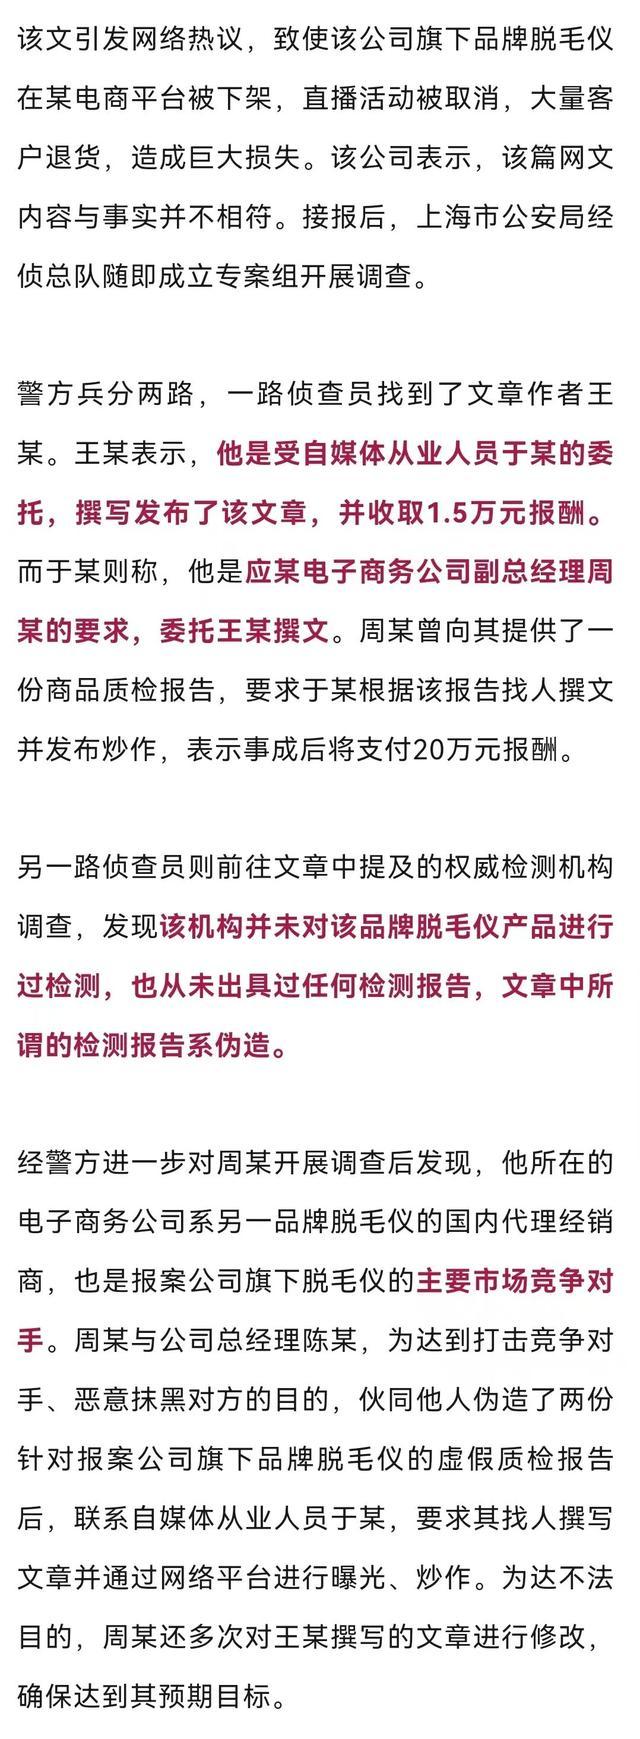 网文称某脱毛仪致失明、流产，商家因此损失过6000万！上海警方还原幕后抹黑真相